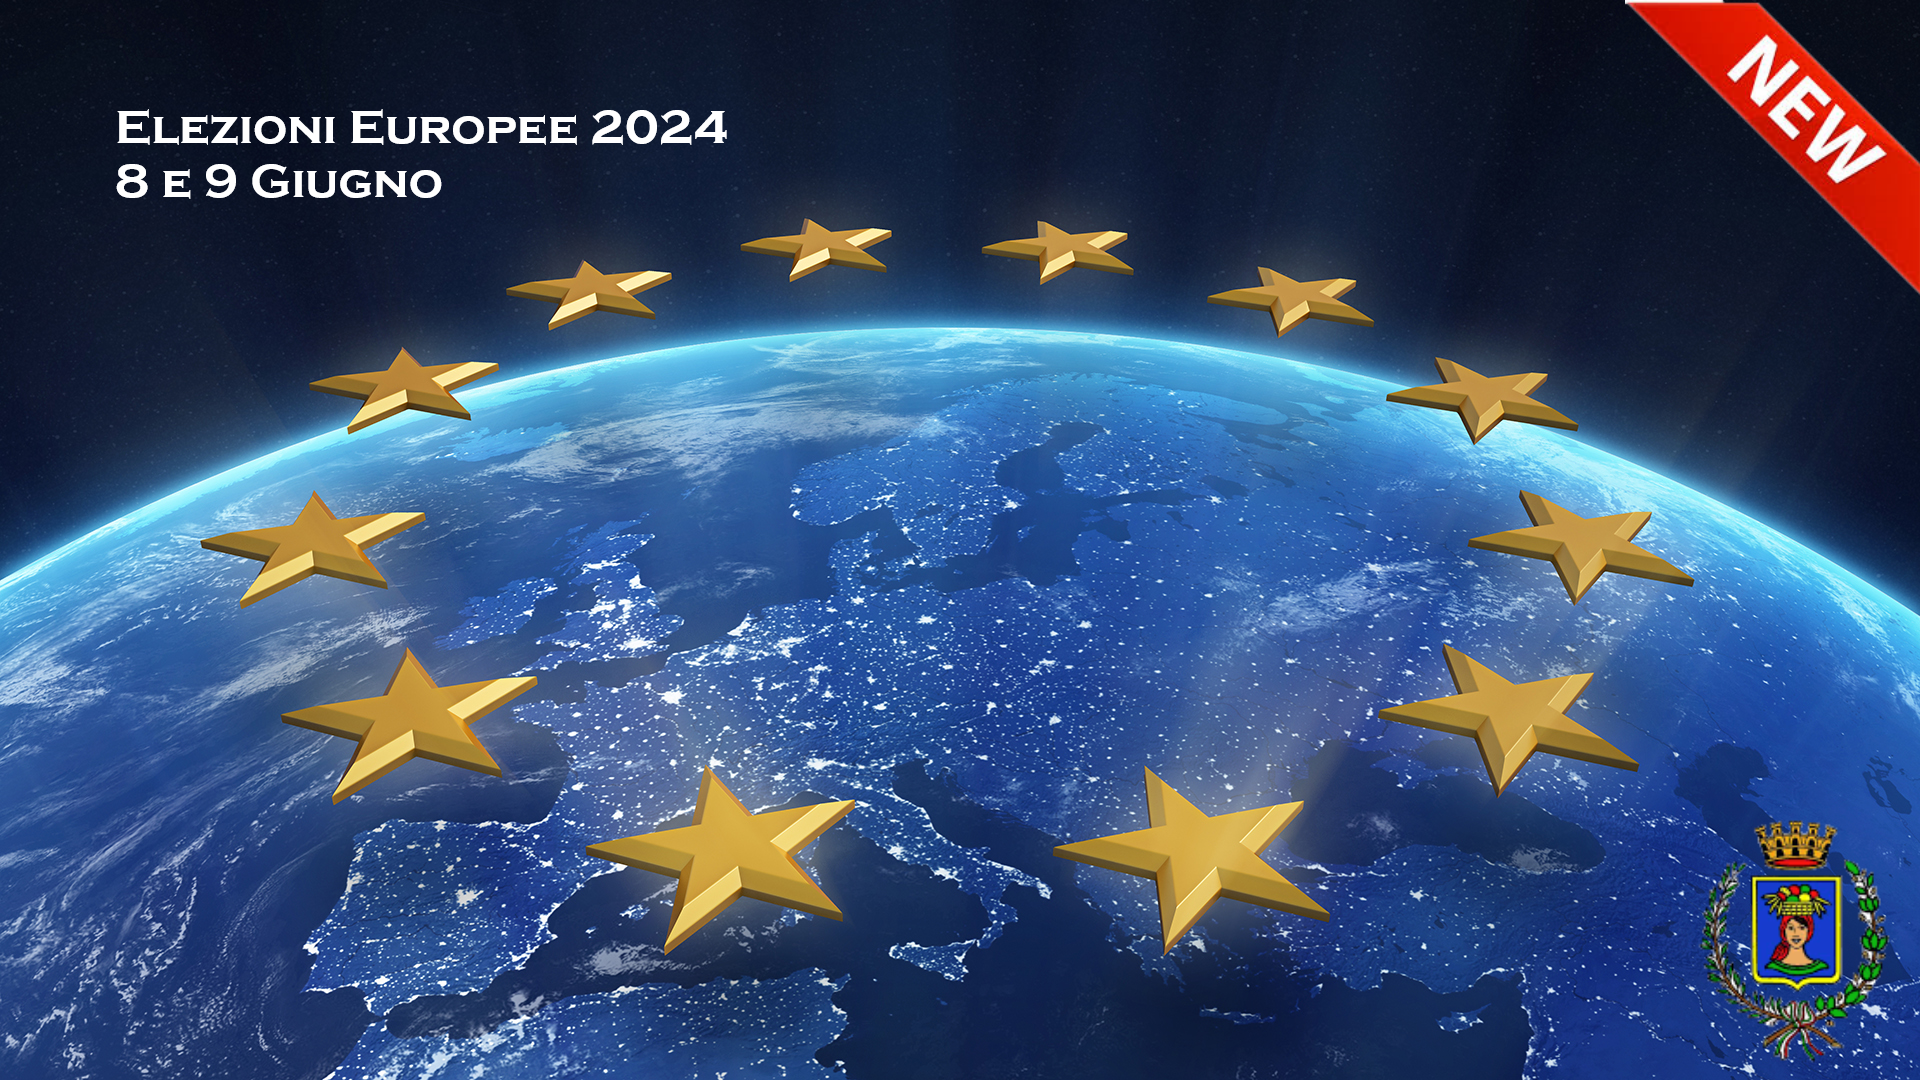 Elezioni Europee 2024 - Affluenza e risultati delle elezioni in corso aggiornati in tempo reale